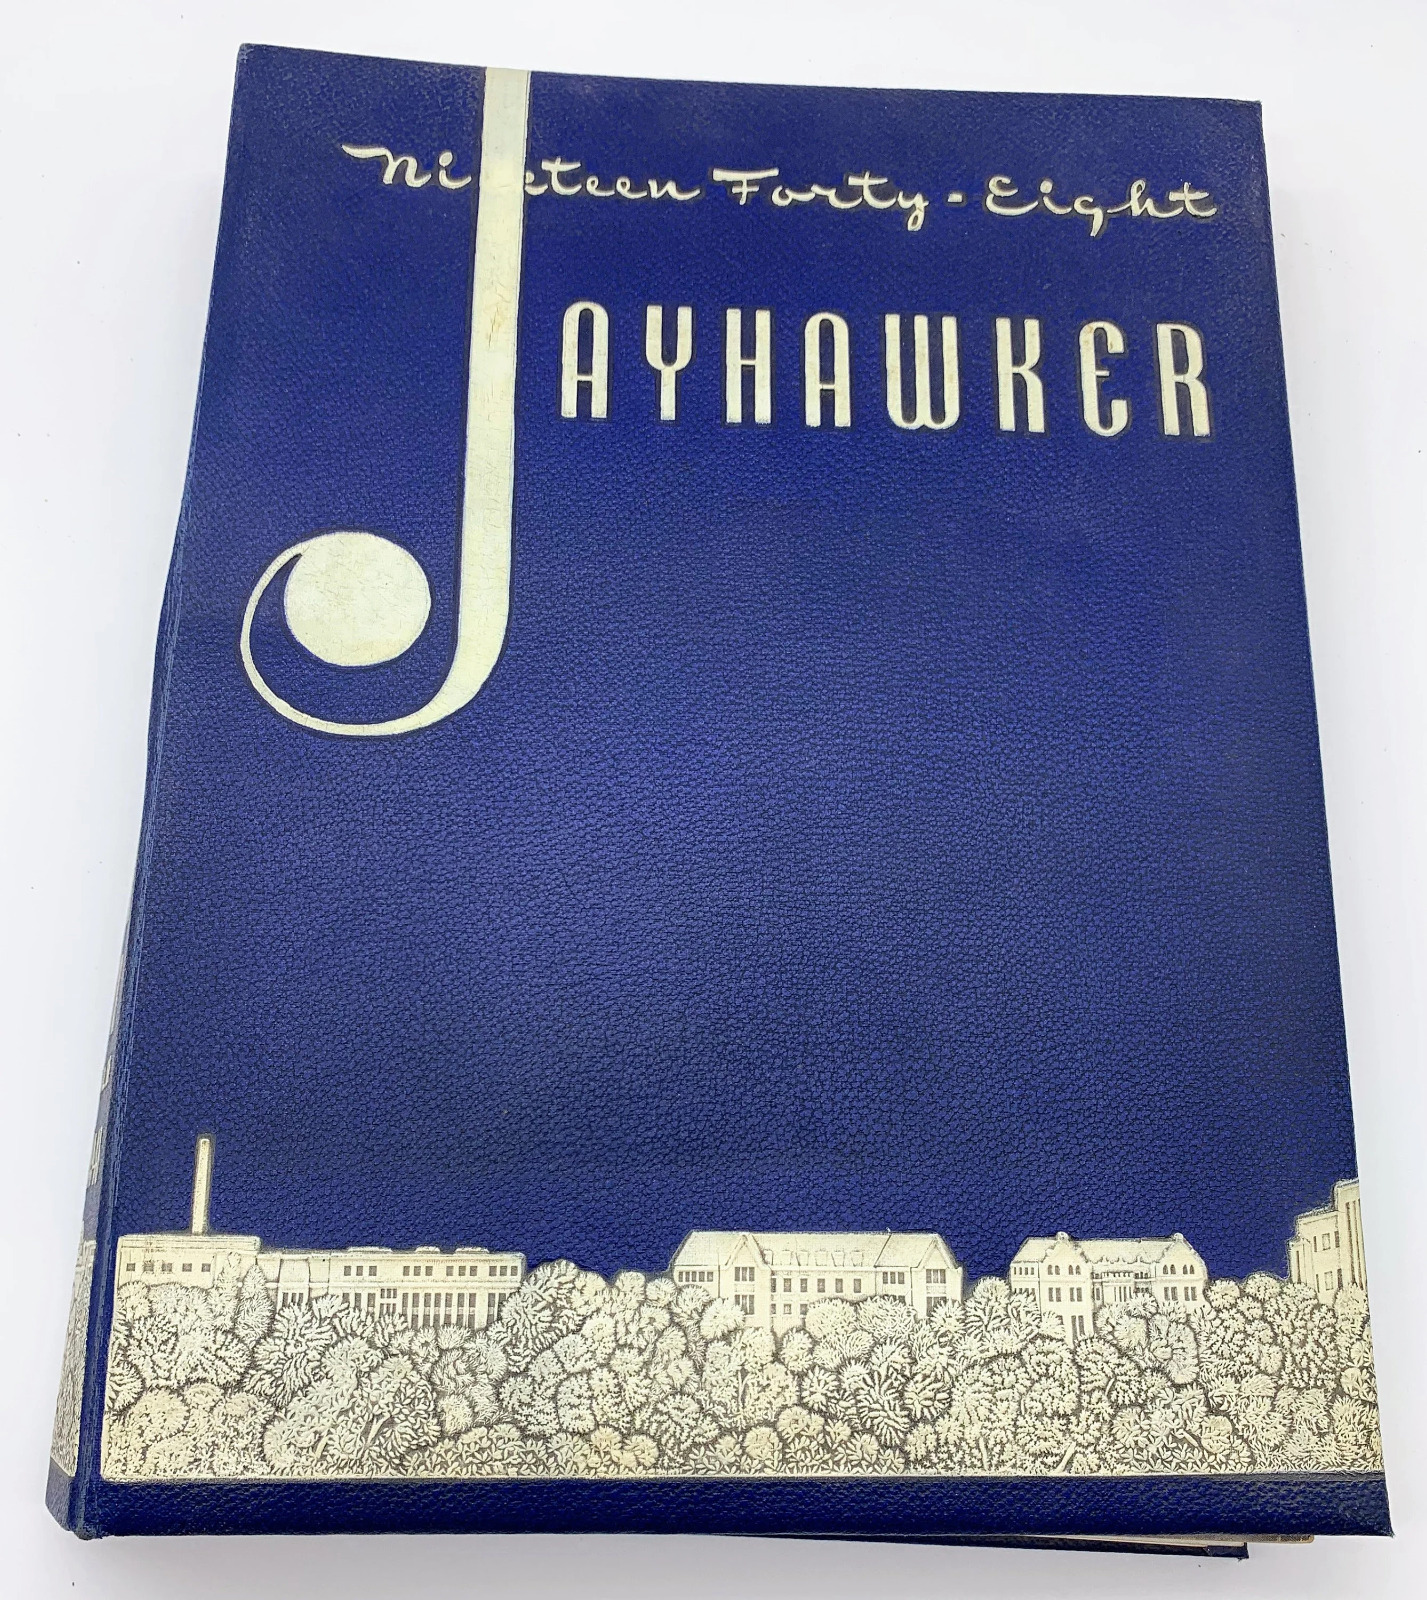 The 1948 Jayhawker - Volume 60 Yearbook - Kansas Jayhawks